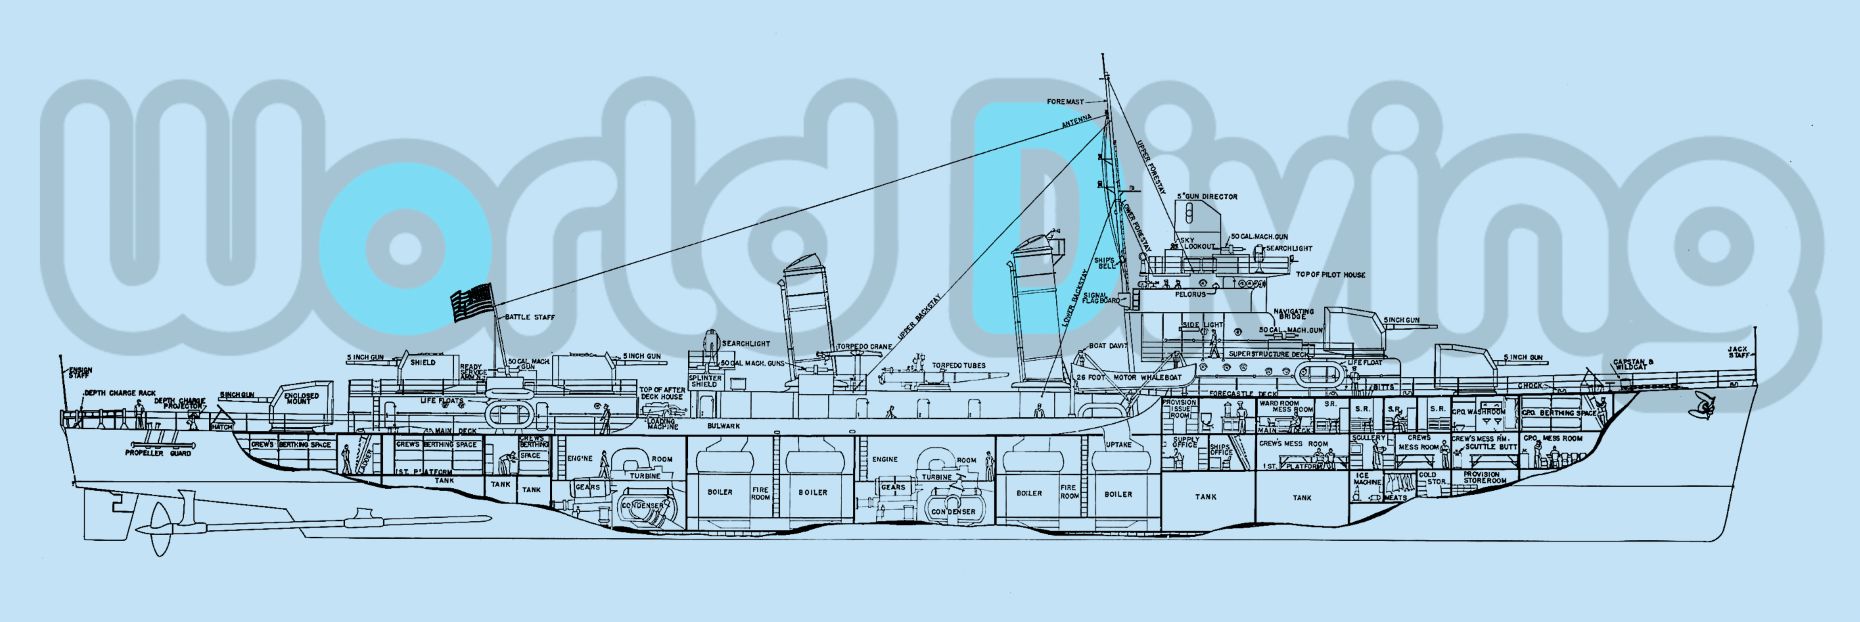 エモンズ(グリープス級駆逐艦)の船体図ファイル